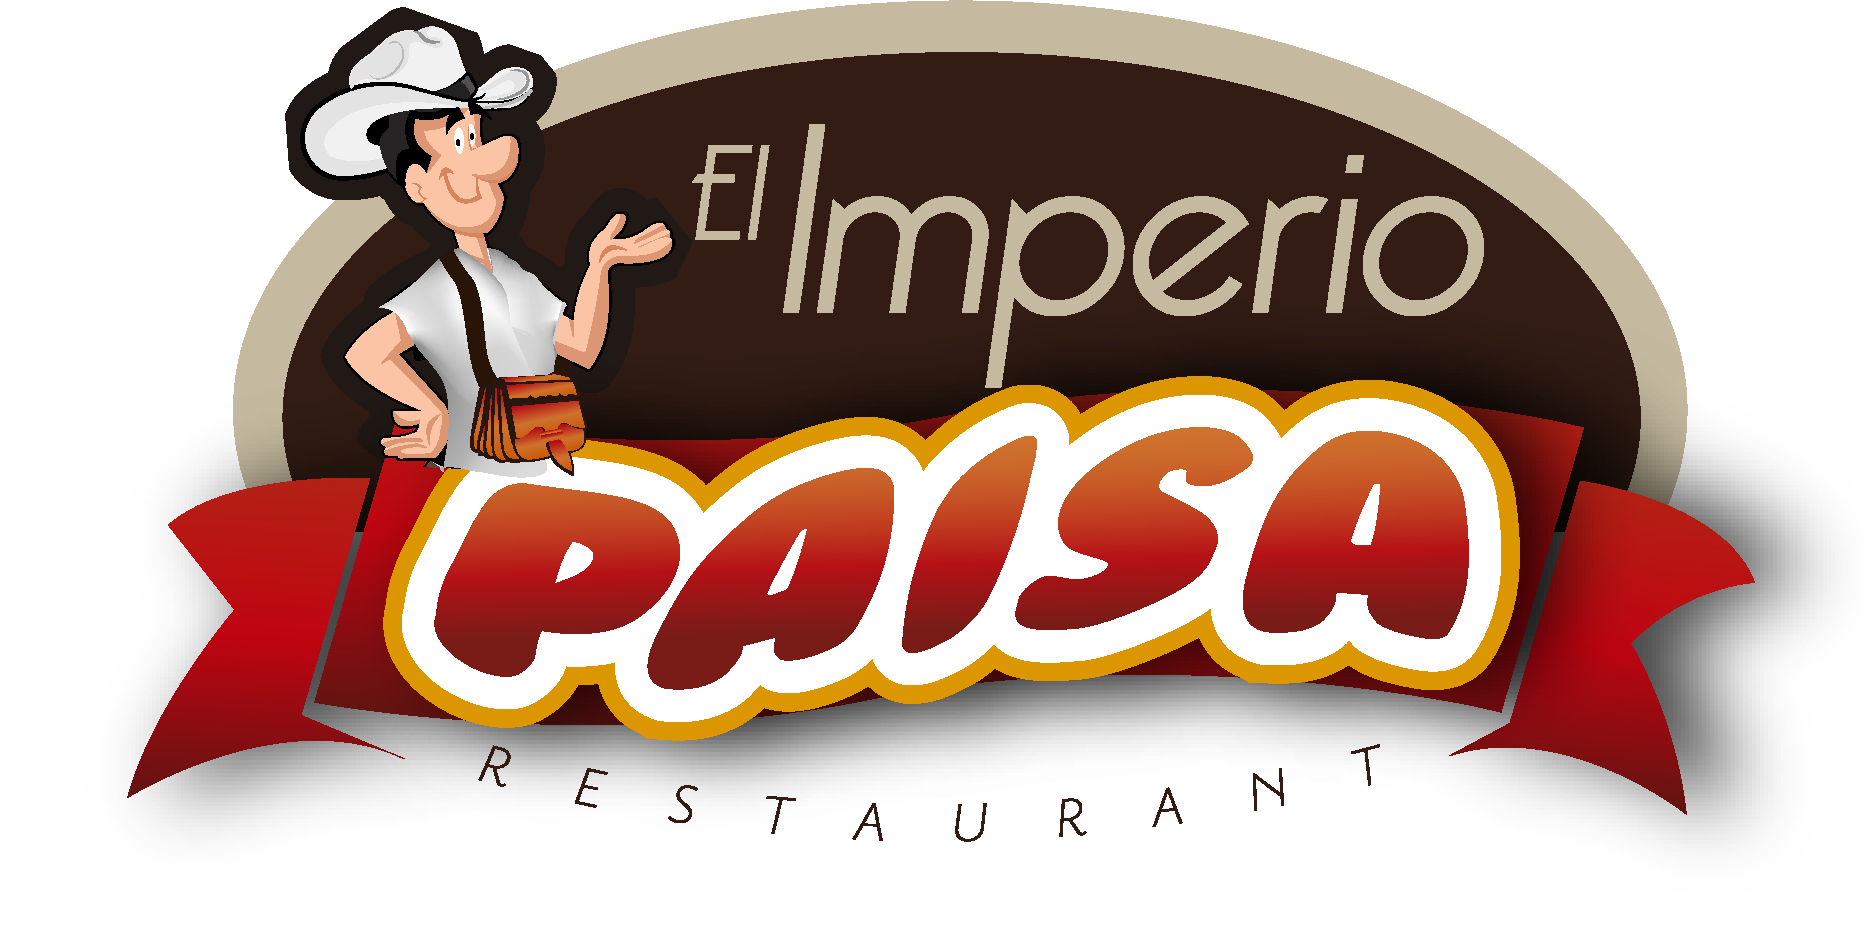 El Paisa Bar